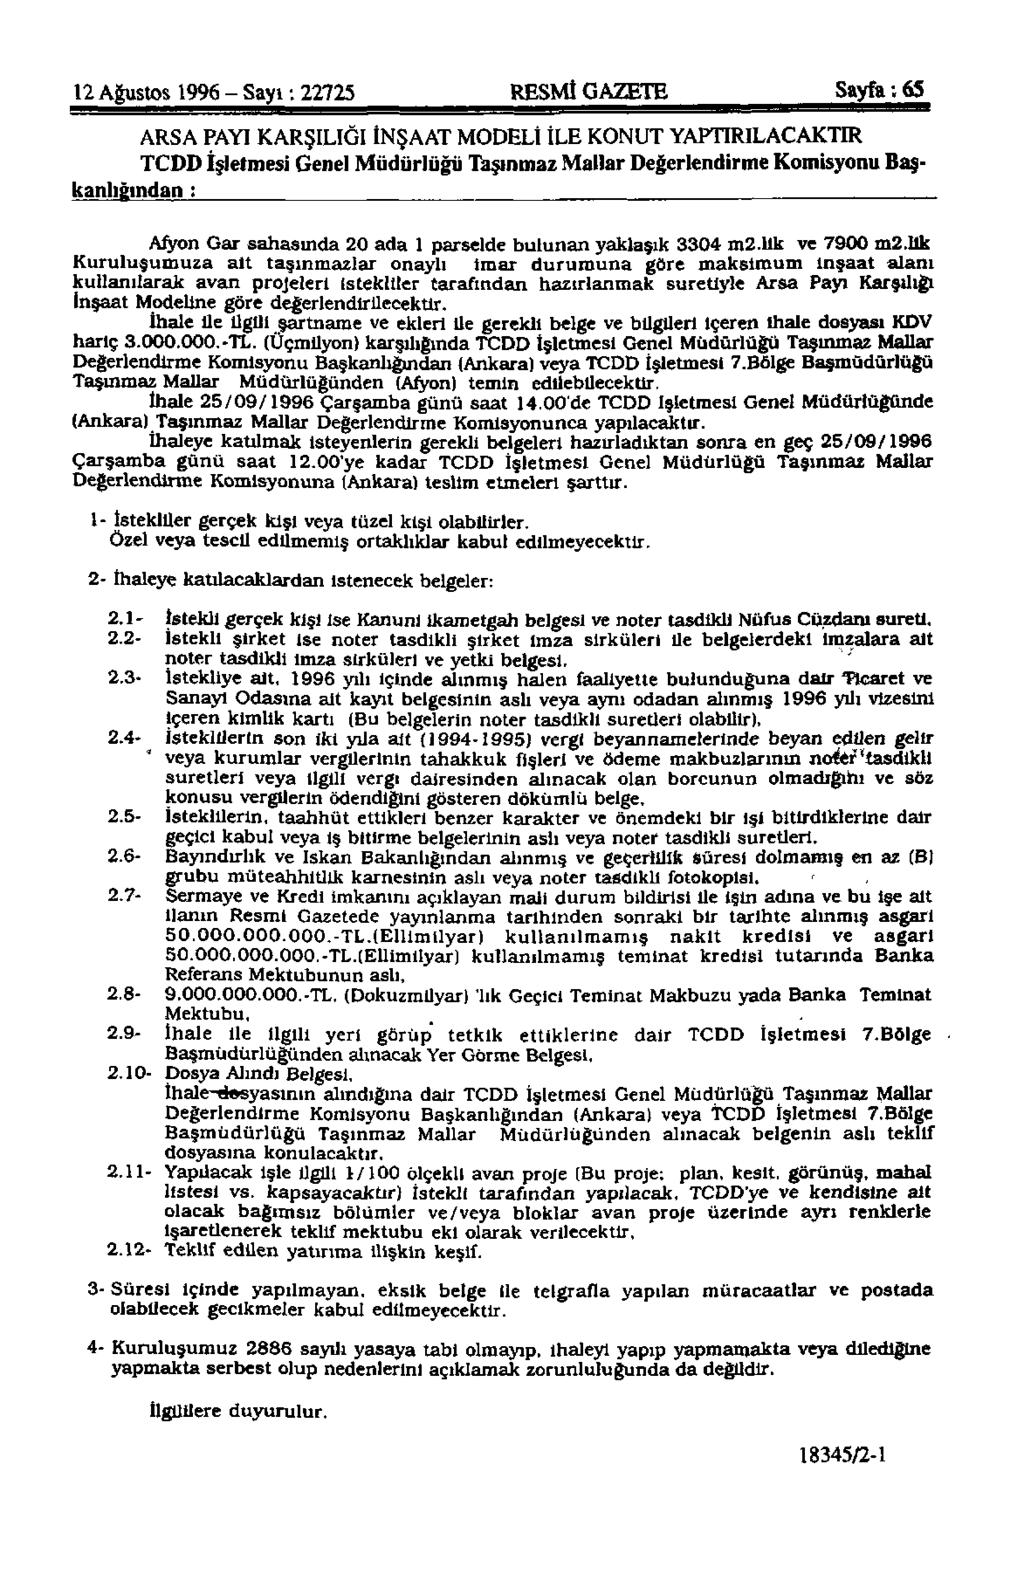 12 Ağustos 1996 - Sayı: 22725 RESMİ GAZETE Sayfa: 65 ARSA PAYI KARŞILIĞI İNŞAAT MODELİ İLE KONUT YAPTIRILACAKTIR TCDD İşletmesi Genel Müdürlüğü Taşınmaz Mallar Değerlendirme Komisyonu Başkanlığından